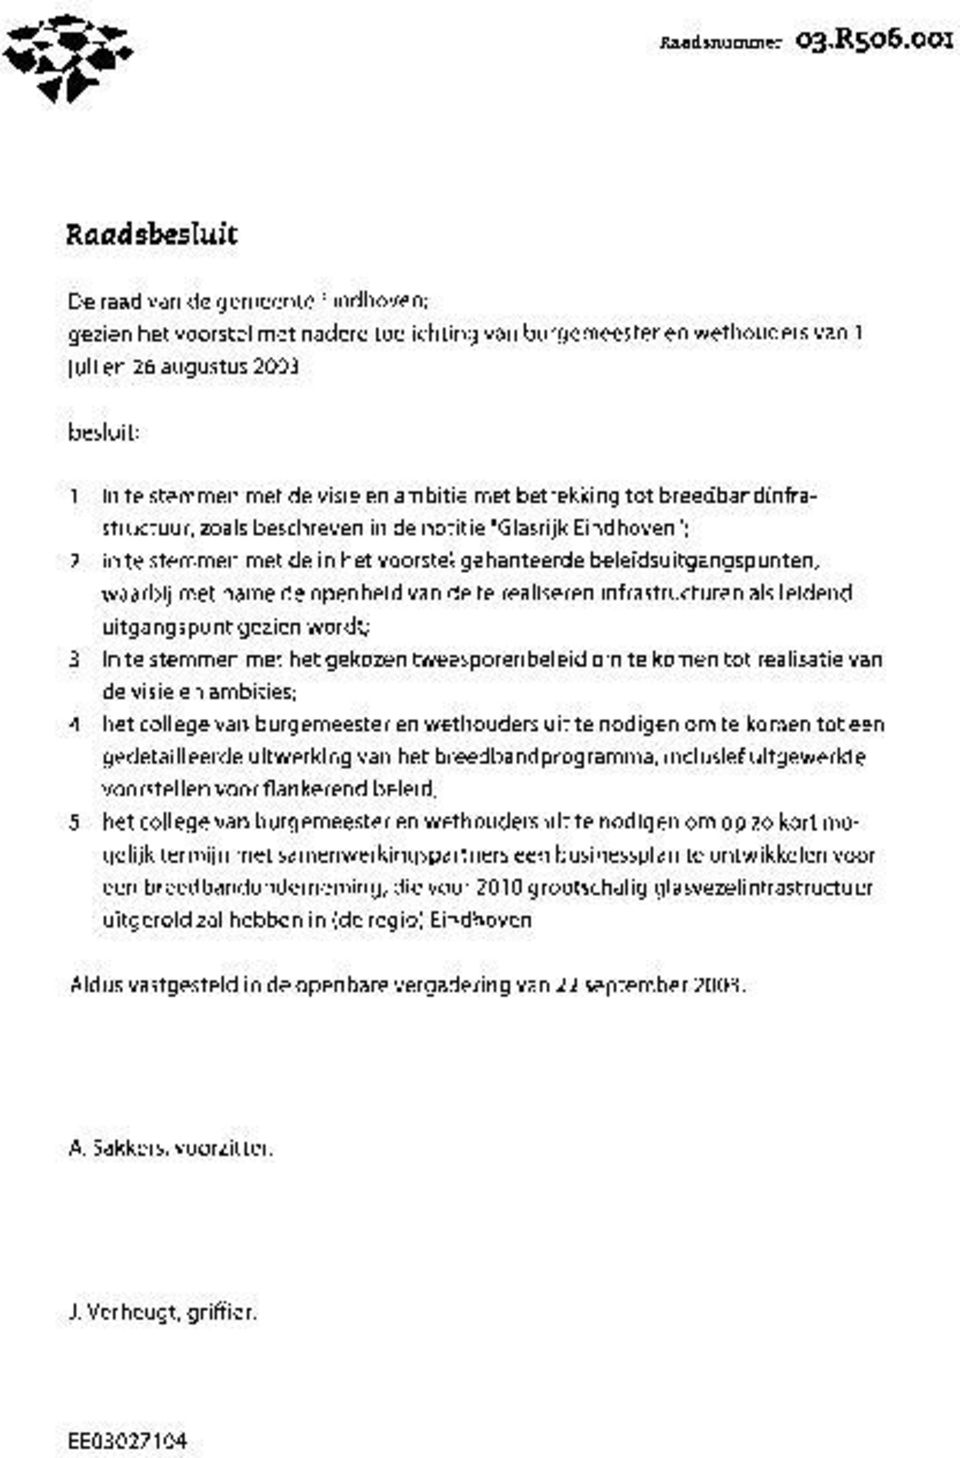 ambitie met betrekking tot breedbandinfrastructuur, zoals beschreven in de notitie "Glasrijk Eindhoven"; 2 in te stemmen met de in het voorstel gehanteerde beleidsuitgangspunten, waarbij met name de